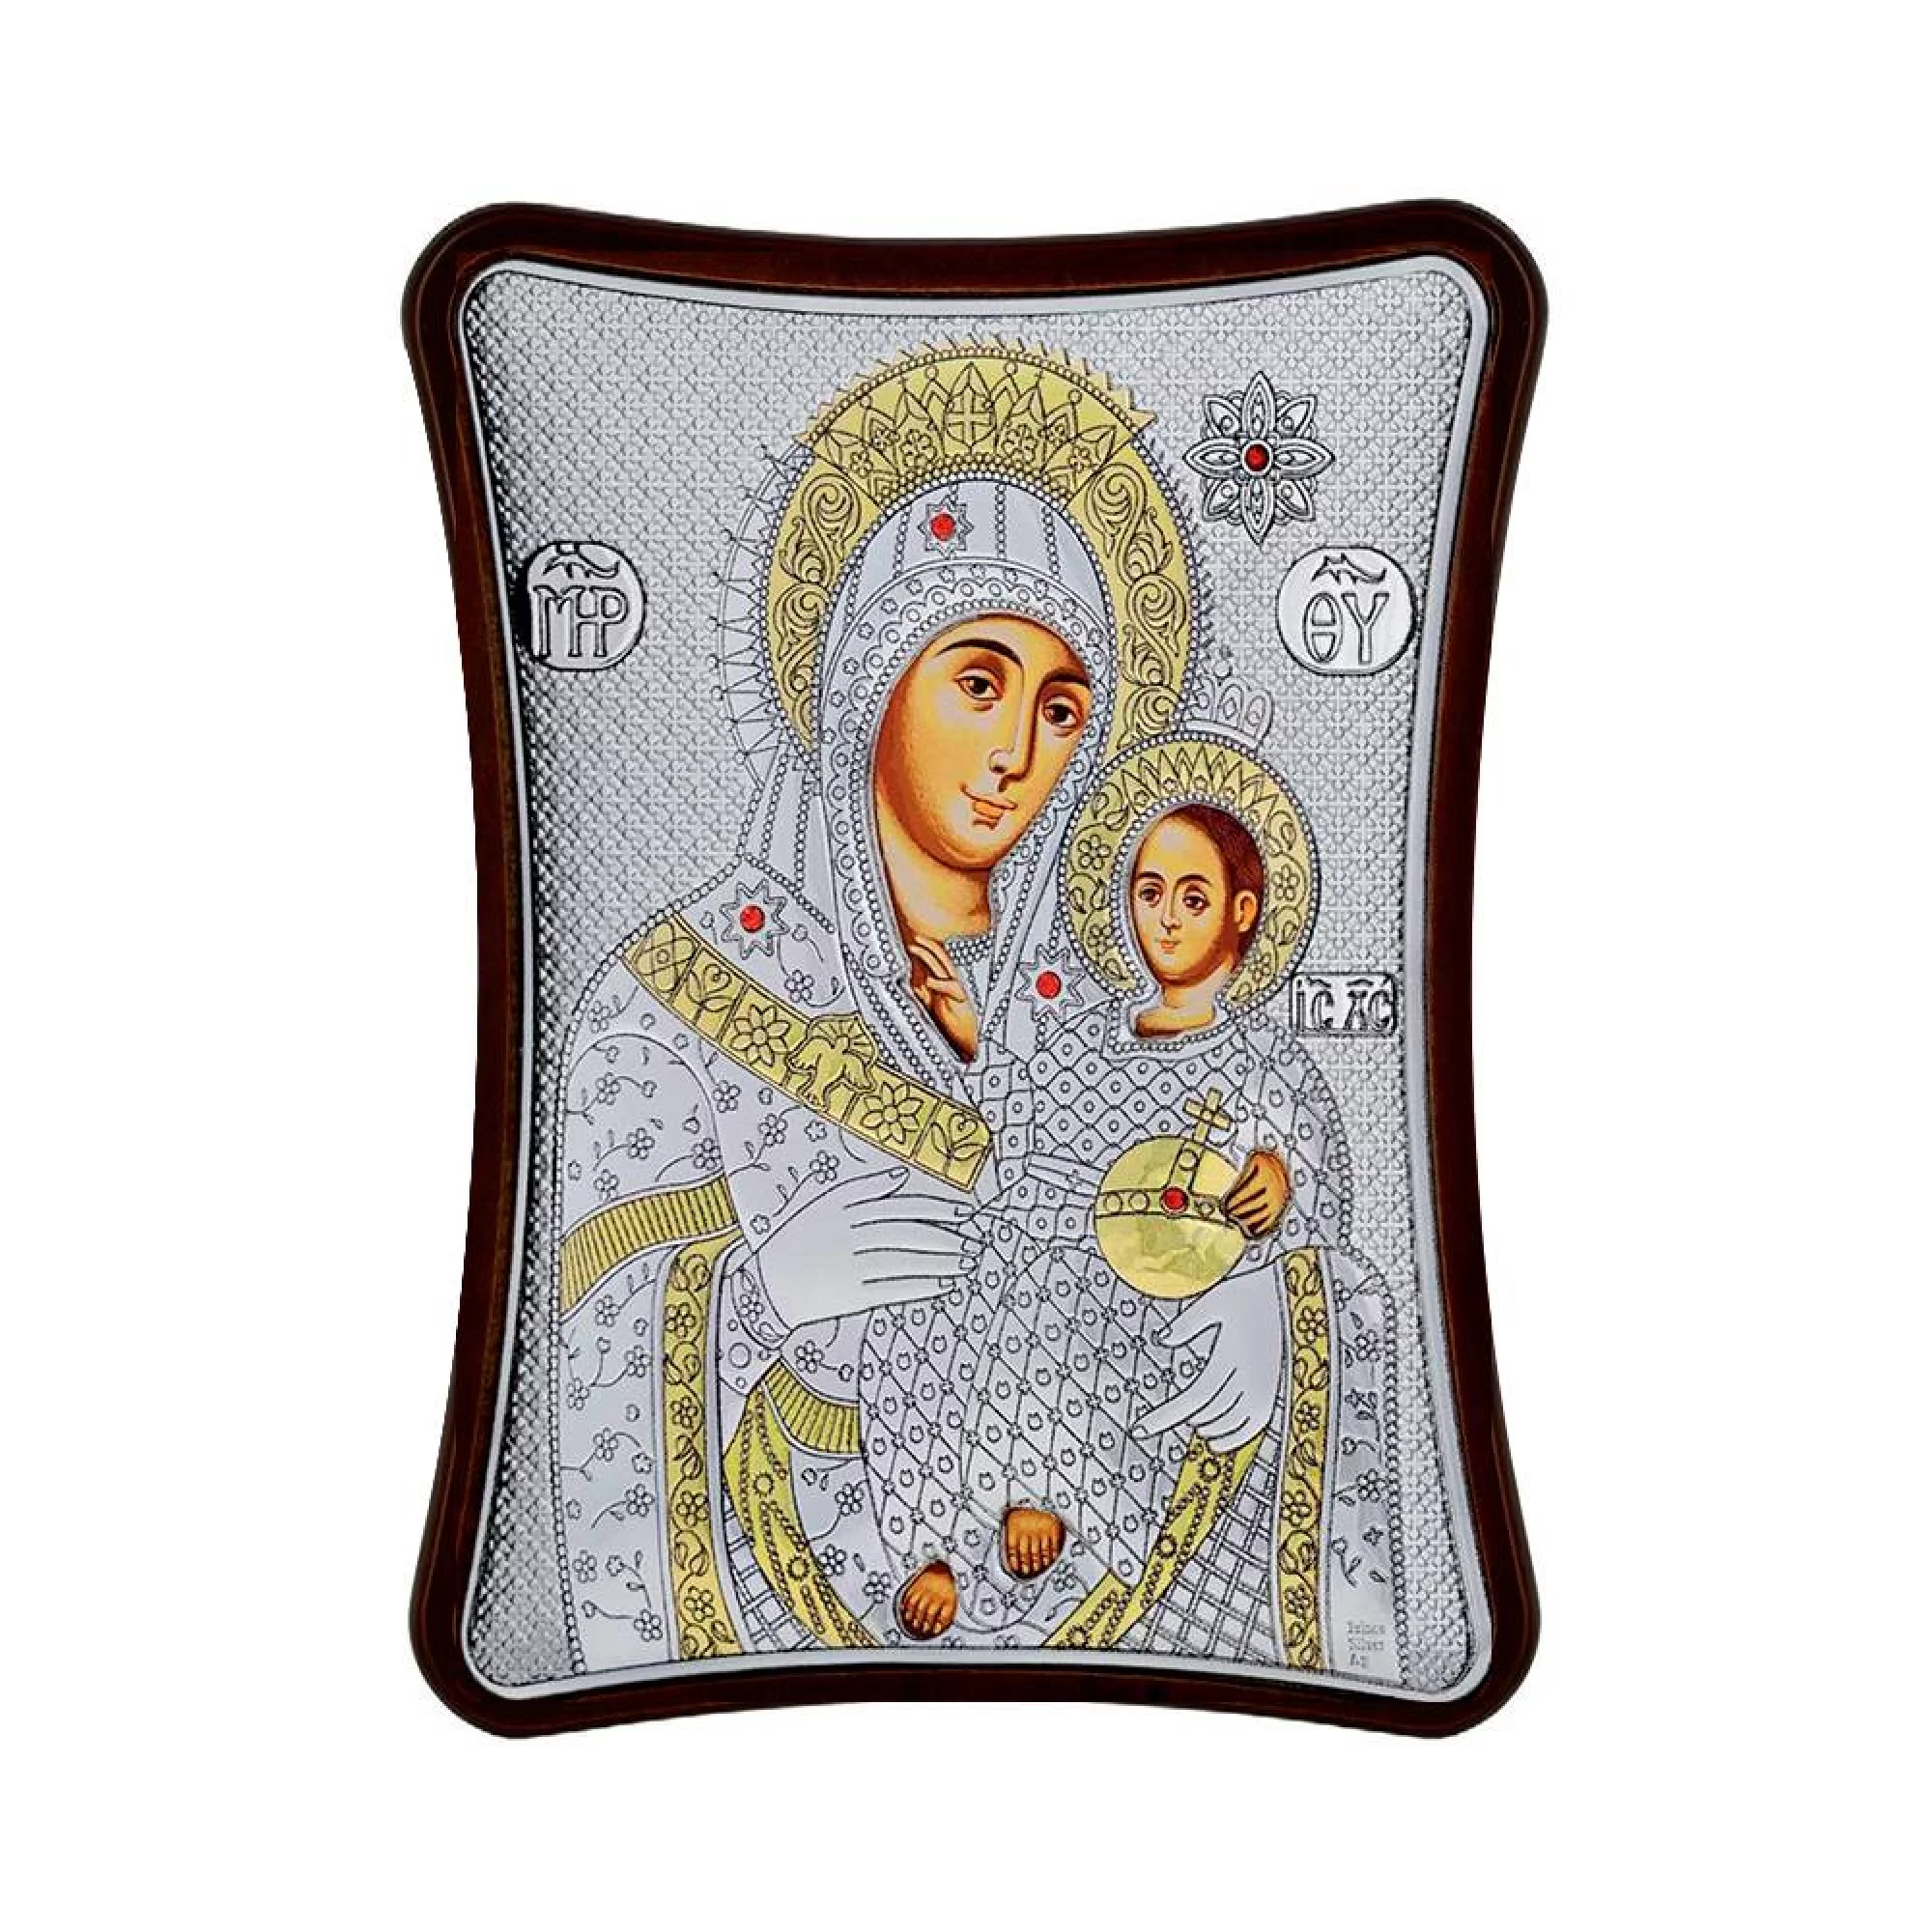 Срібна ікона Богородиця "Віфлеємська" 150х120 мм - 1593193 – зображення 1